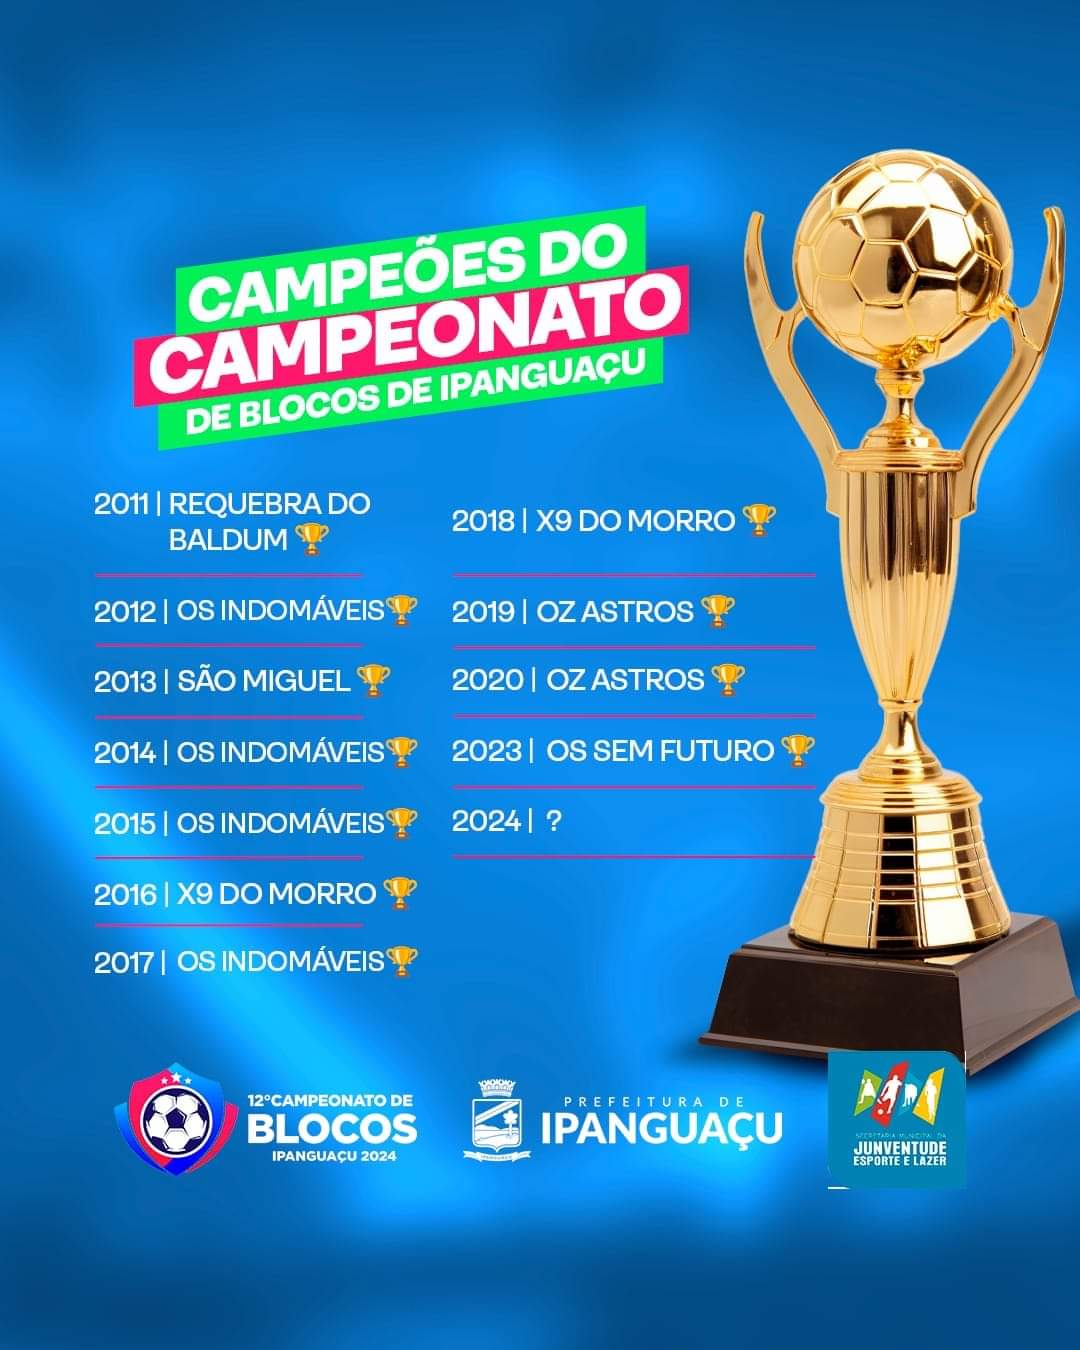 Confira os atuais campeões do Campeonato de Blocos de Ipanguaçu